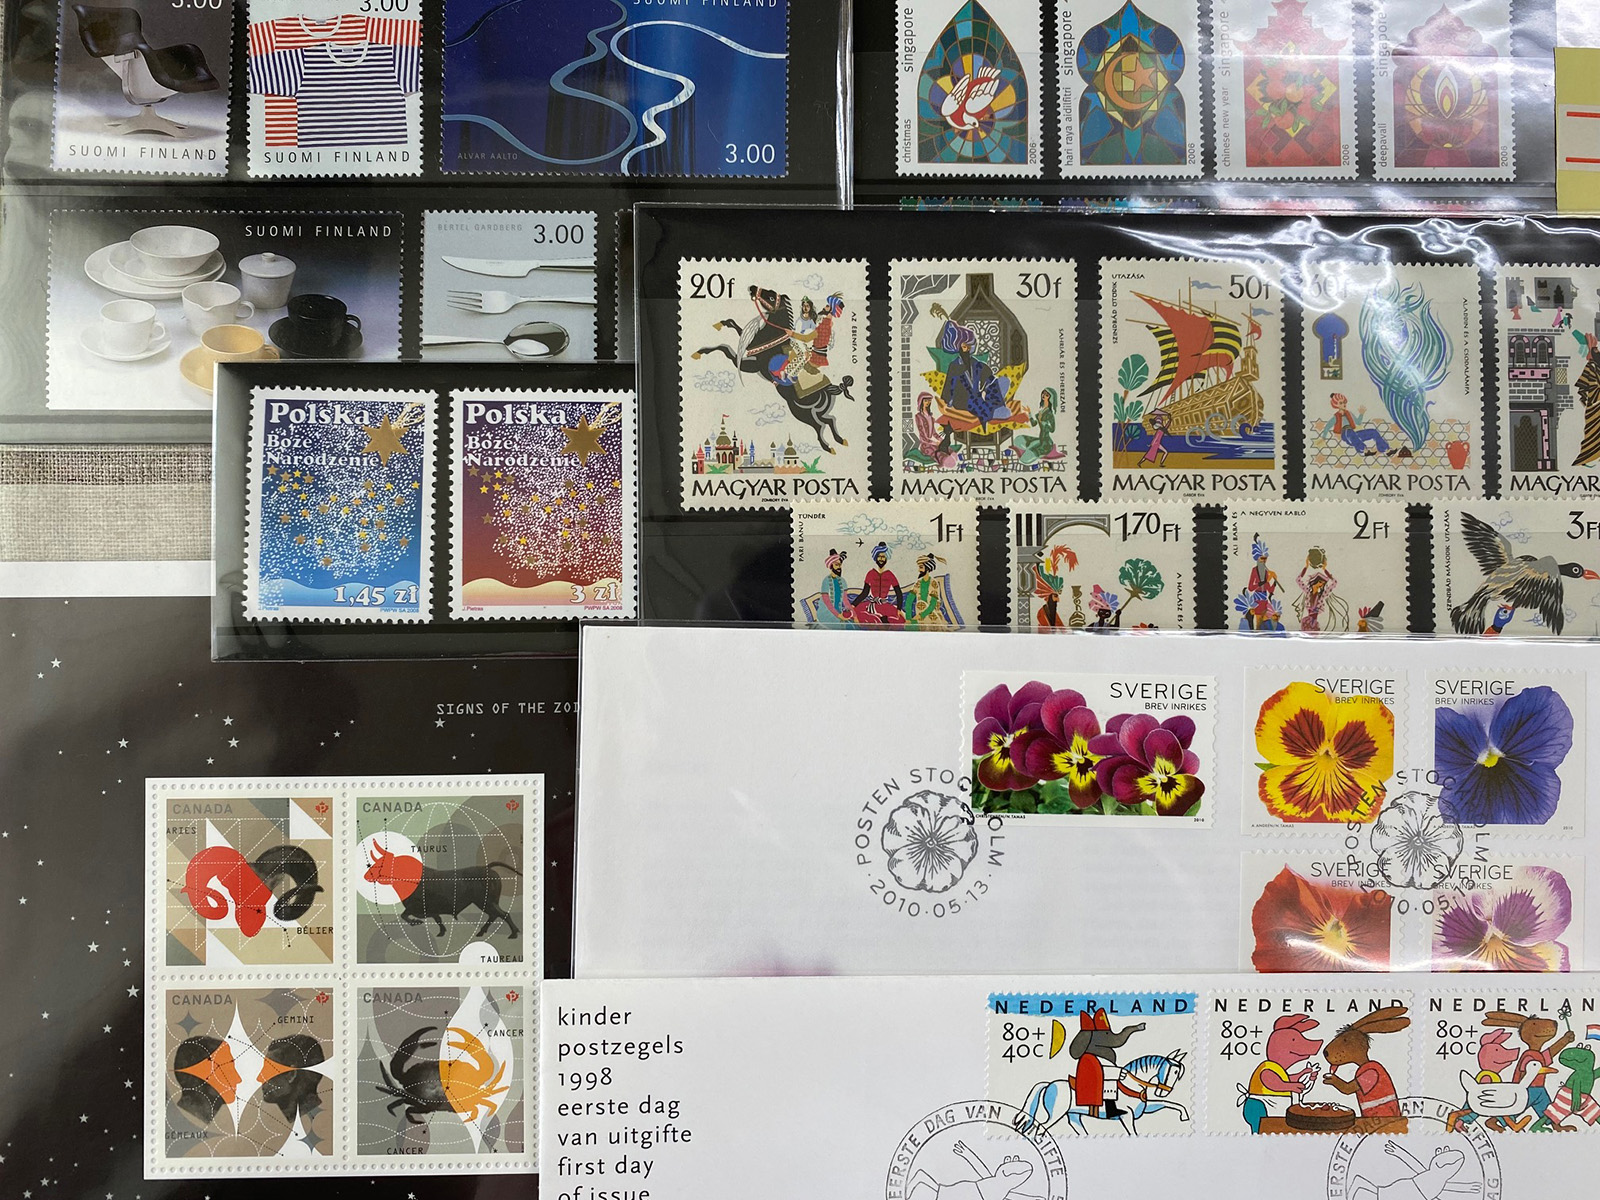 手紙と切手のステーショナリー展 | 芝生 GALLERY SHIBAFU